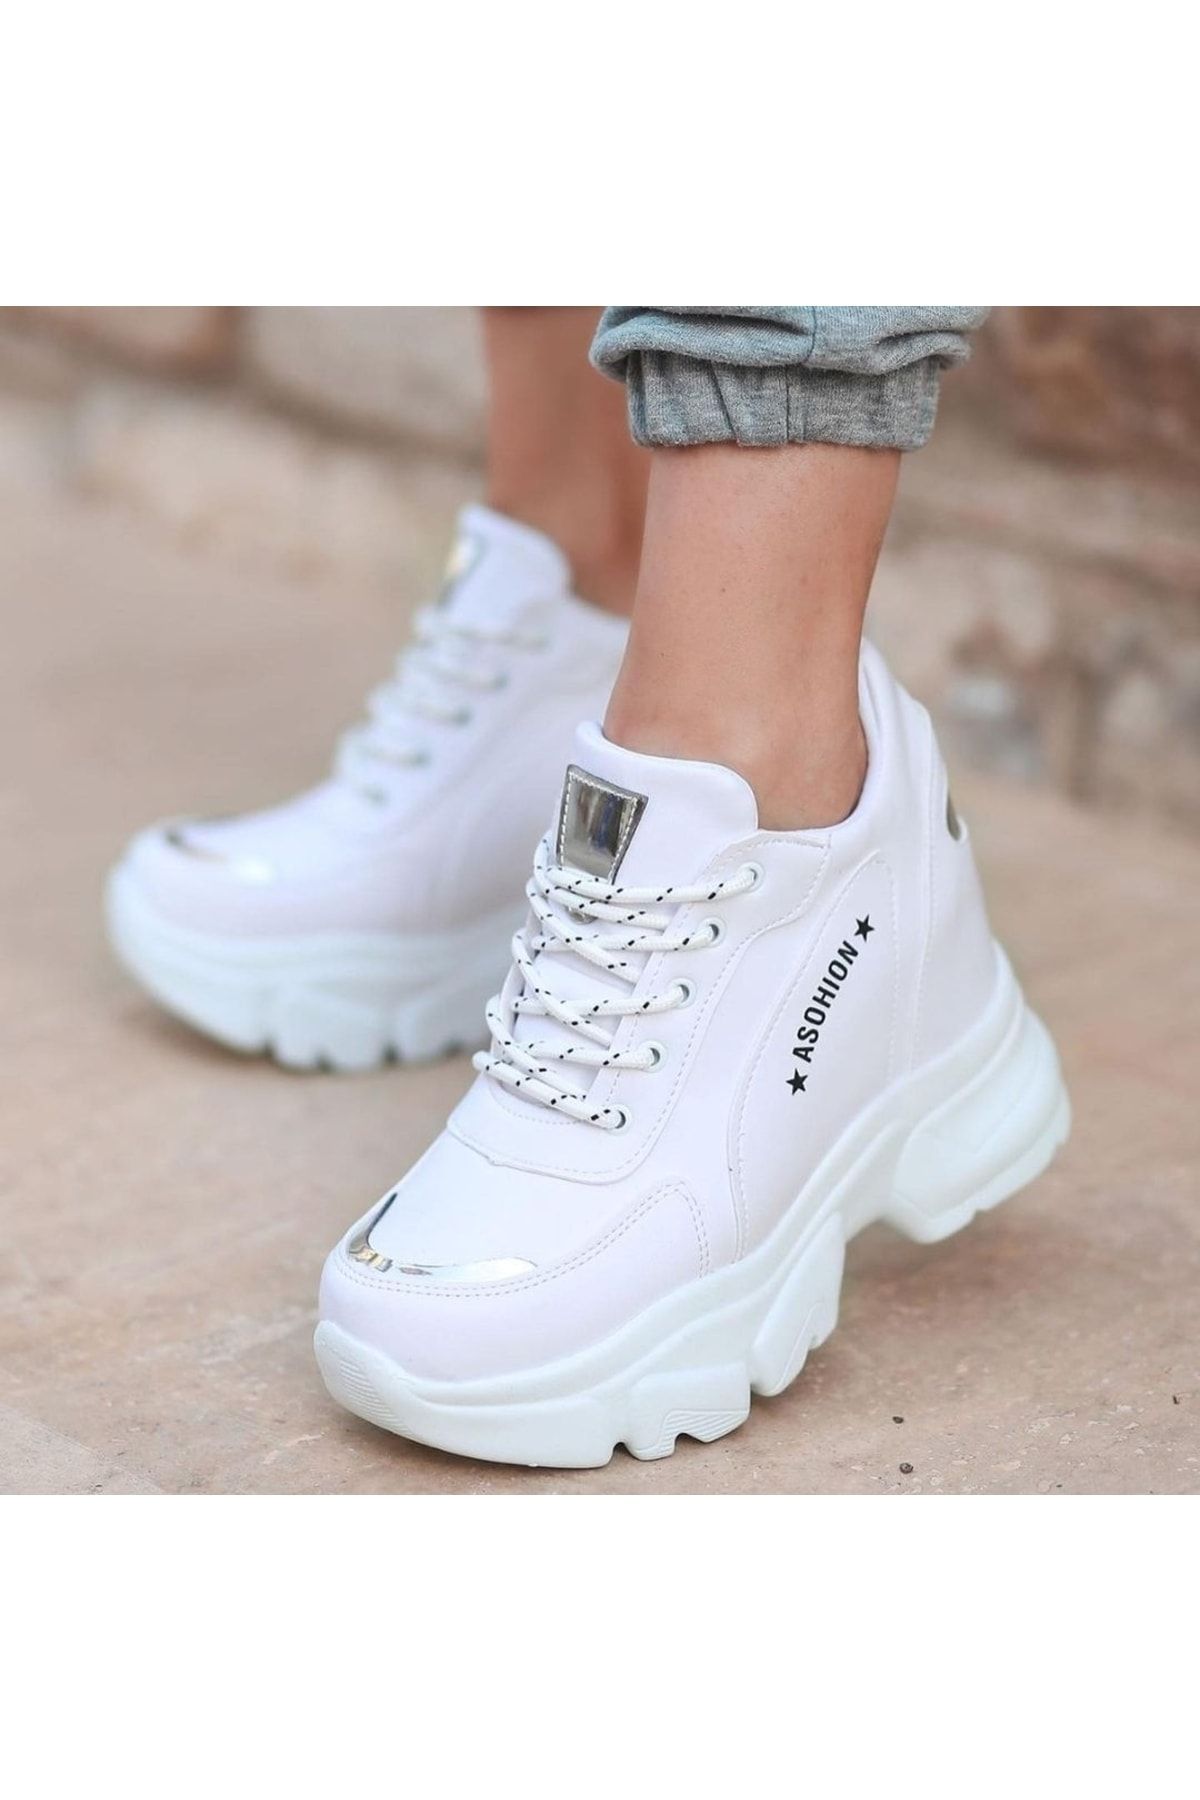 Afilli Kadın Beyaz Içten Gizli Yüksek Dolgu Platform Topuk Günlük Parlak Sneaker Spor Ayakkabı